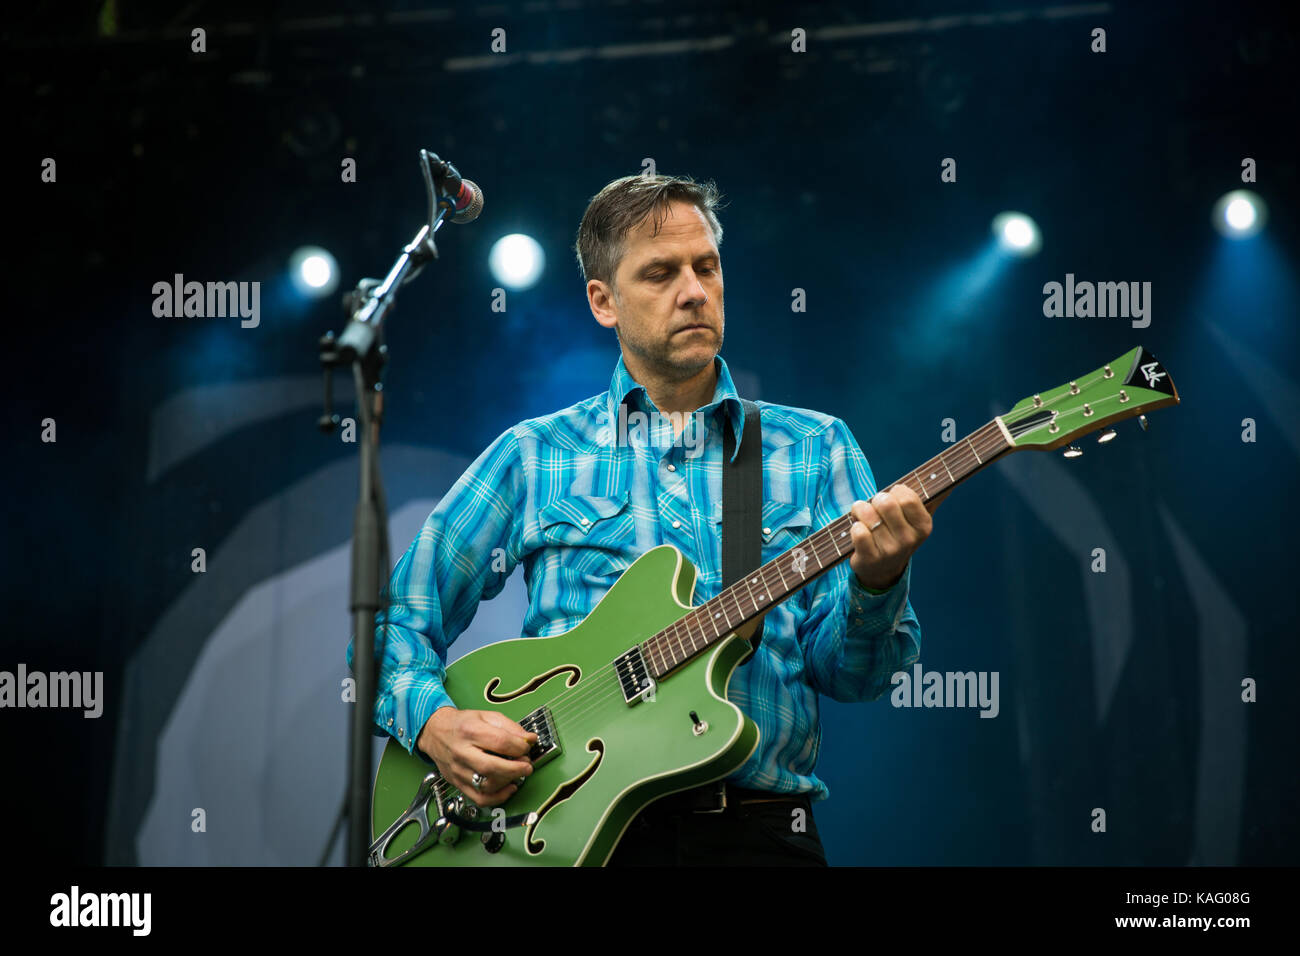 Le groupe américain Calexico joue un concert au festival de musique norvégien Bergenfest 2015 à Bergen. Ici, le chanteur et musicien Joey Burns est photographié en direct sur scène. Norvège, 12/06 2015. Banque D'Images